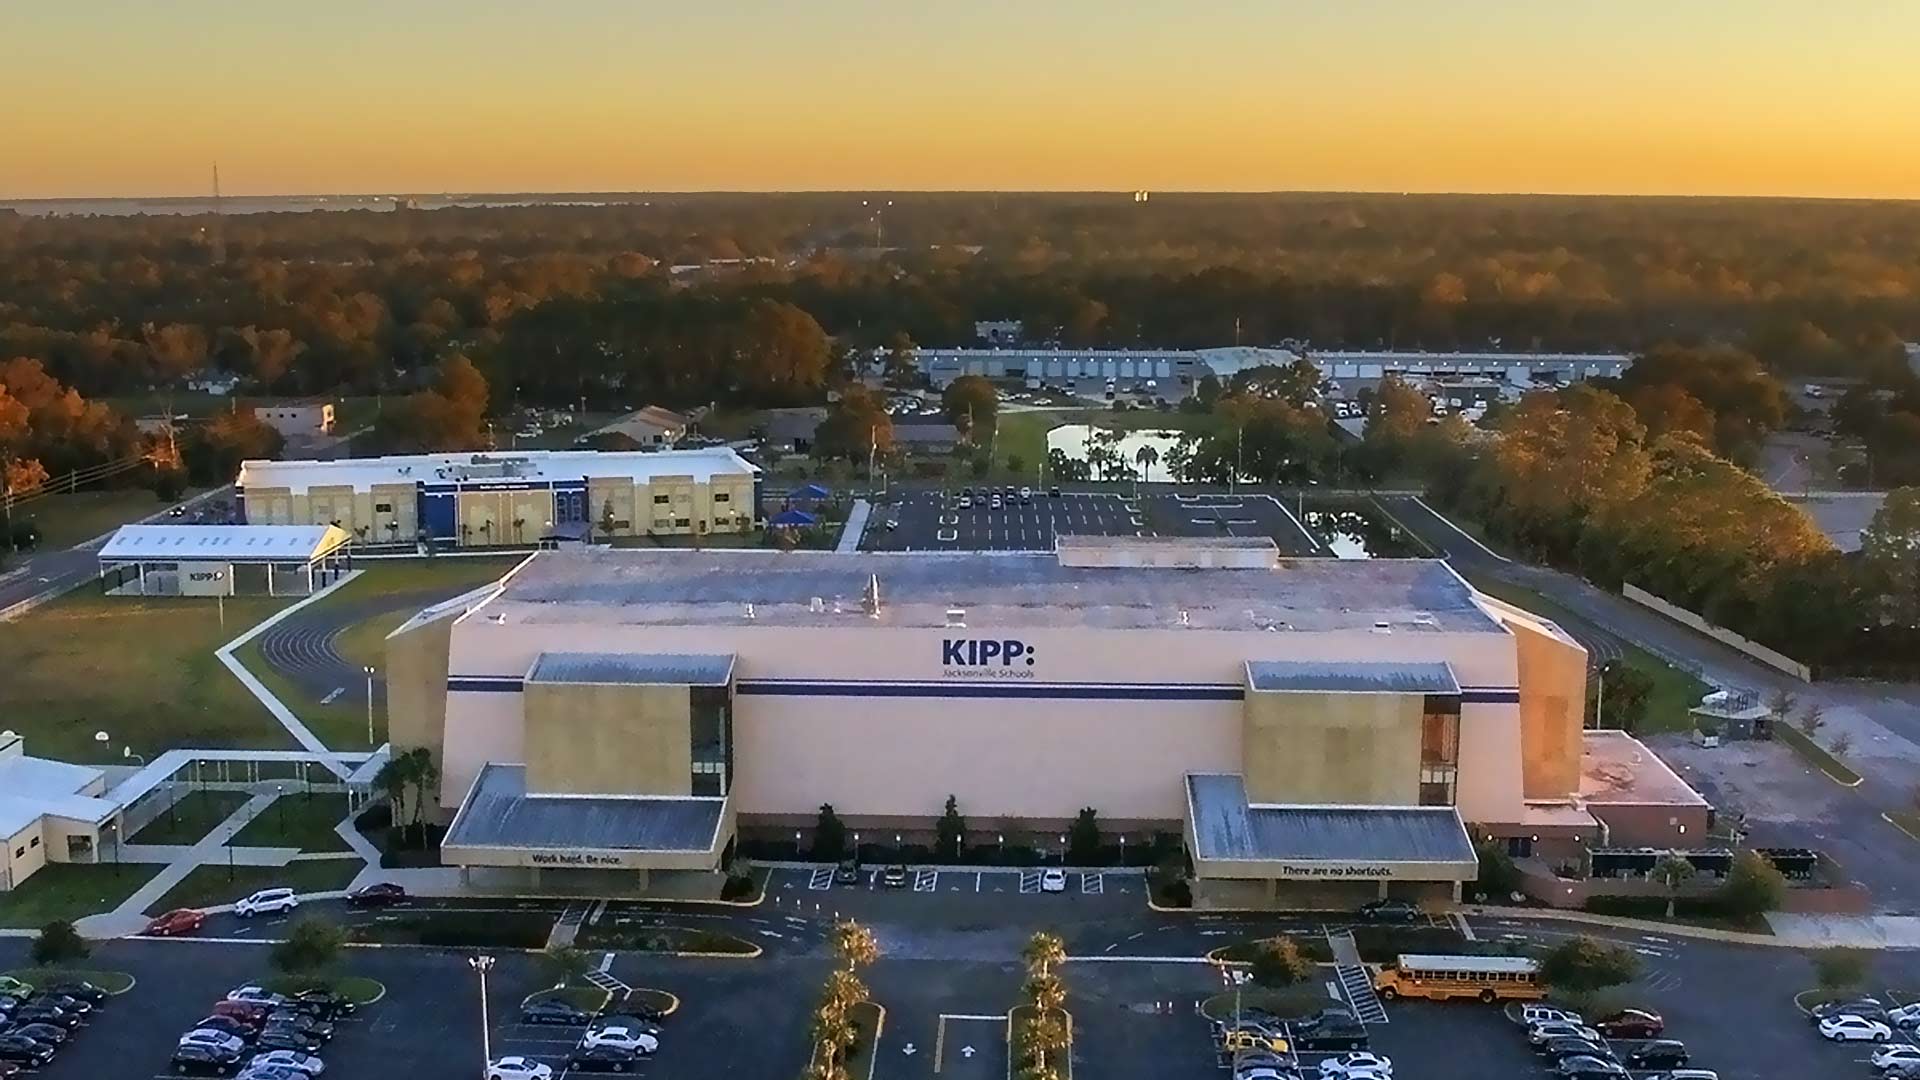 Register Roofing Commercial Roof For KIPP School in Jacksonville, FL.